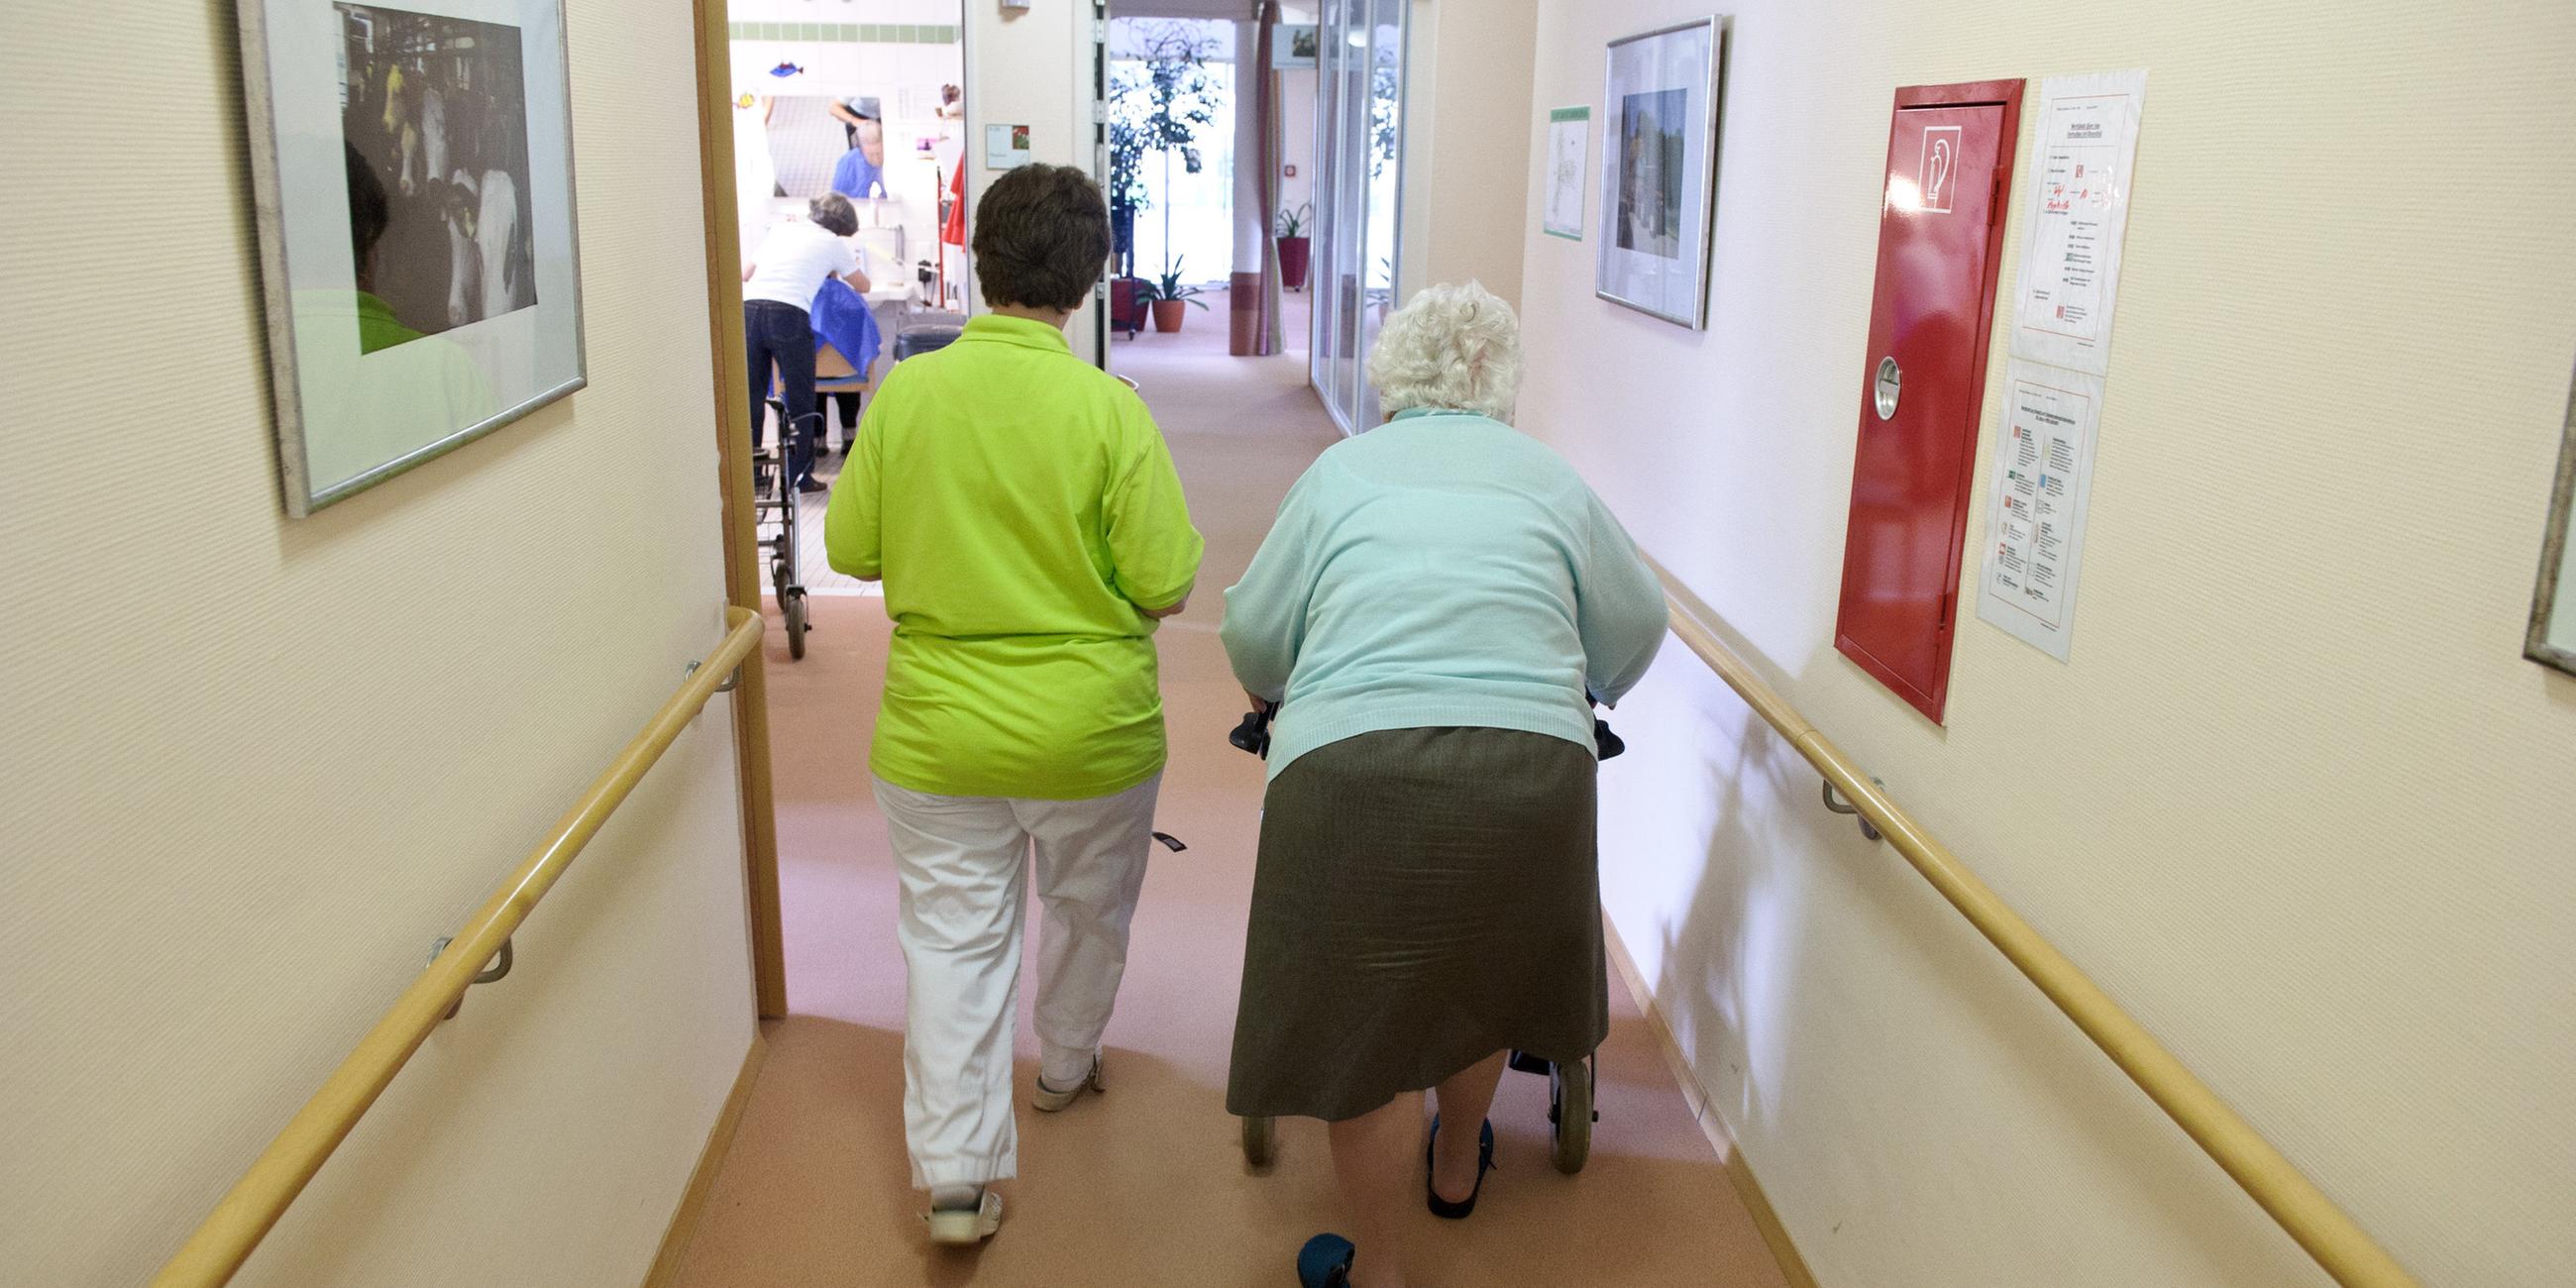 Eine Altenpflegerin begleitet eine Seniorin an einem Rollator durch einen Flur.